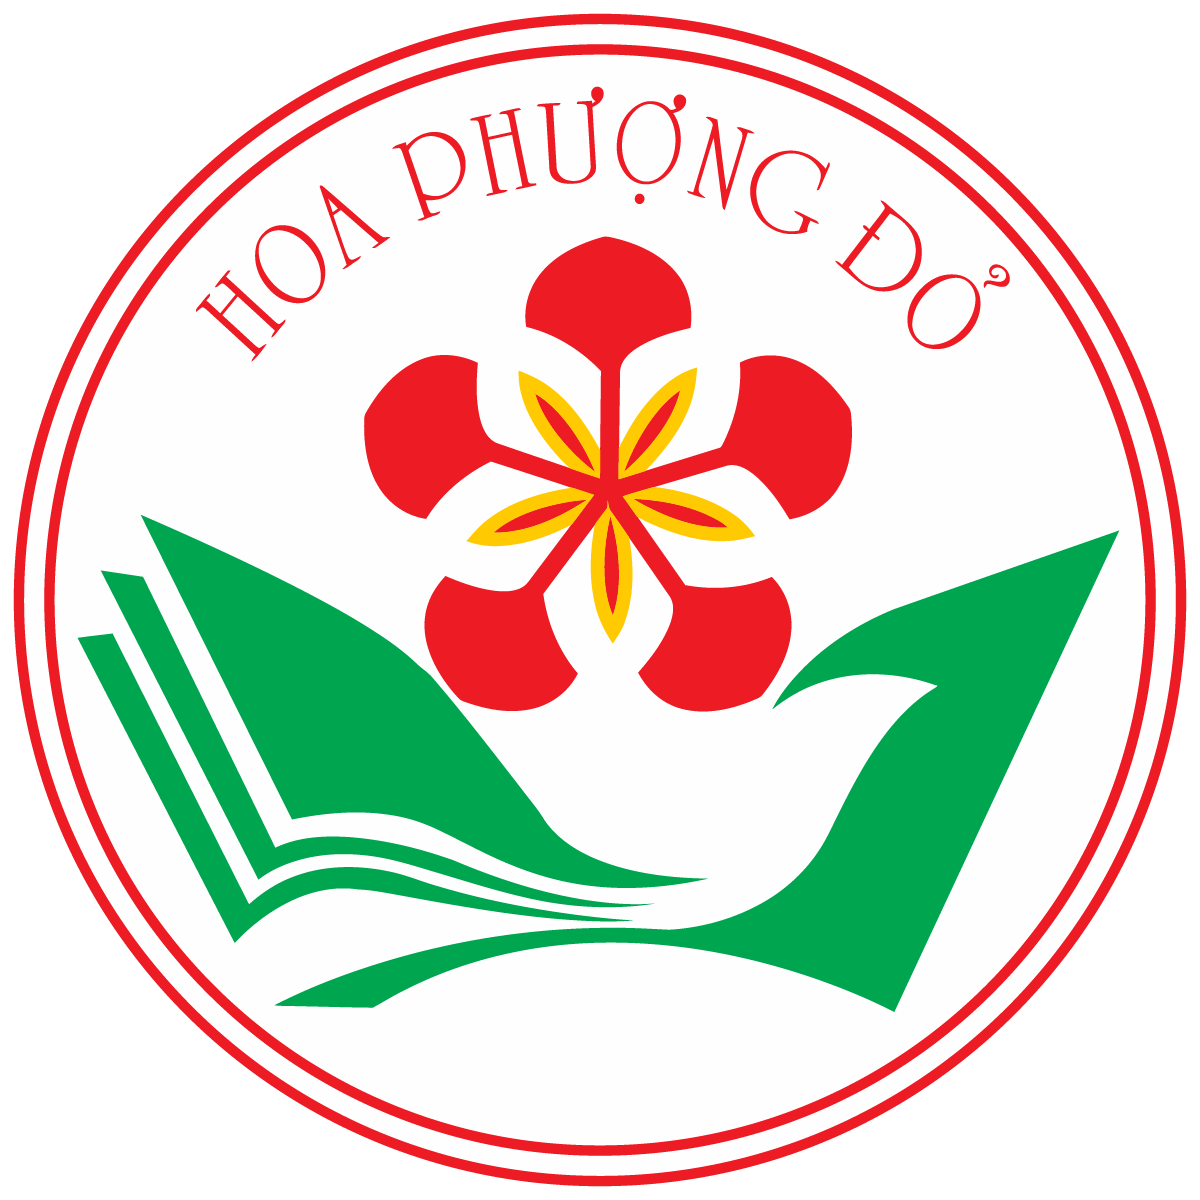 Logo Chien Dich Hoa Phuong Do